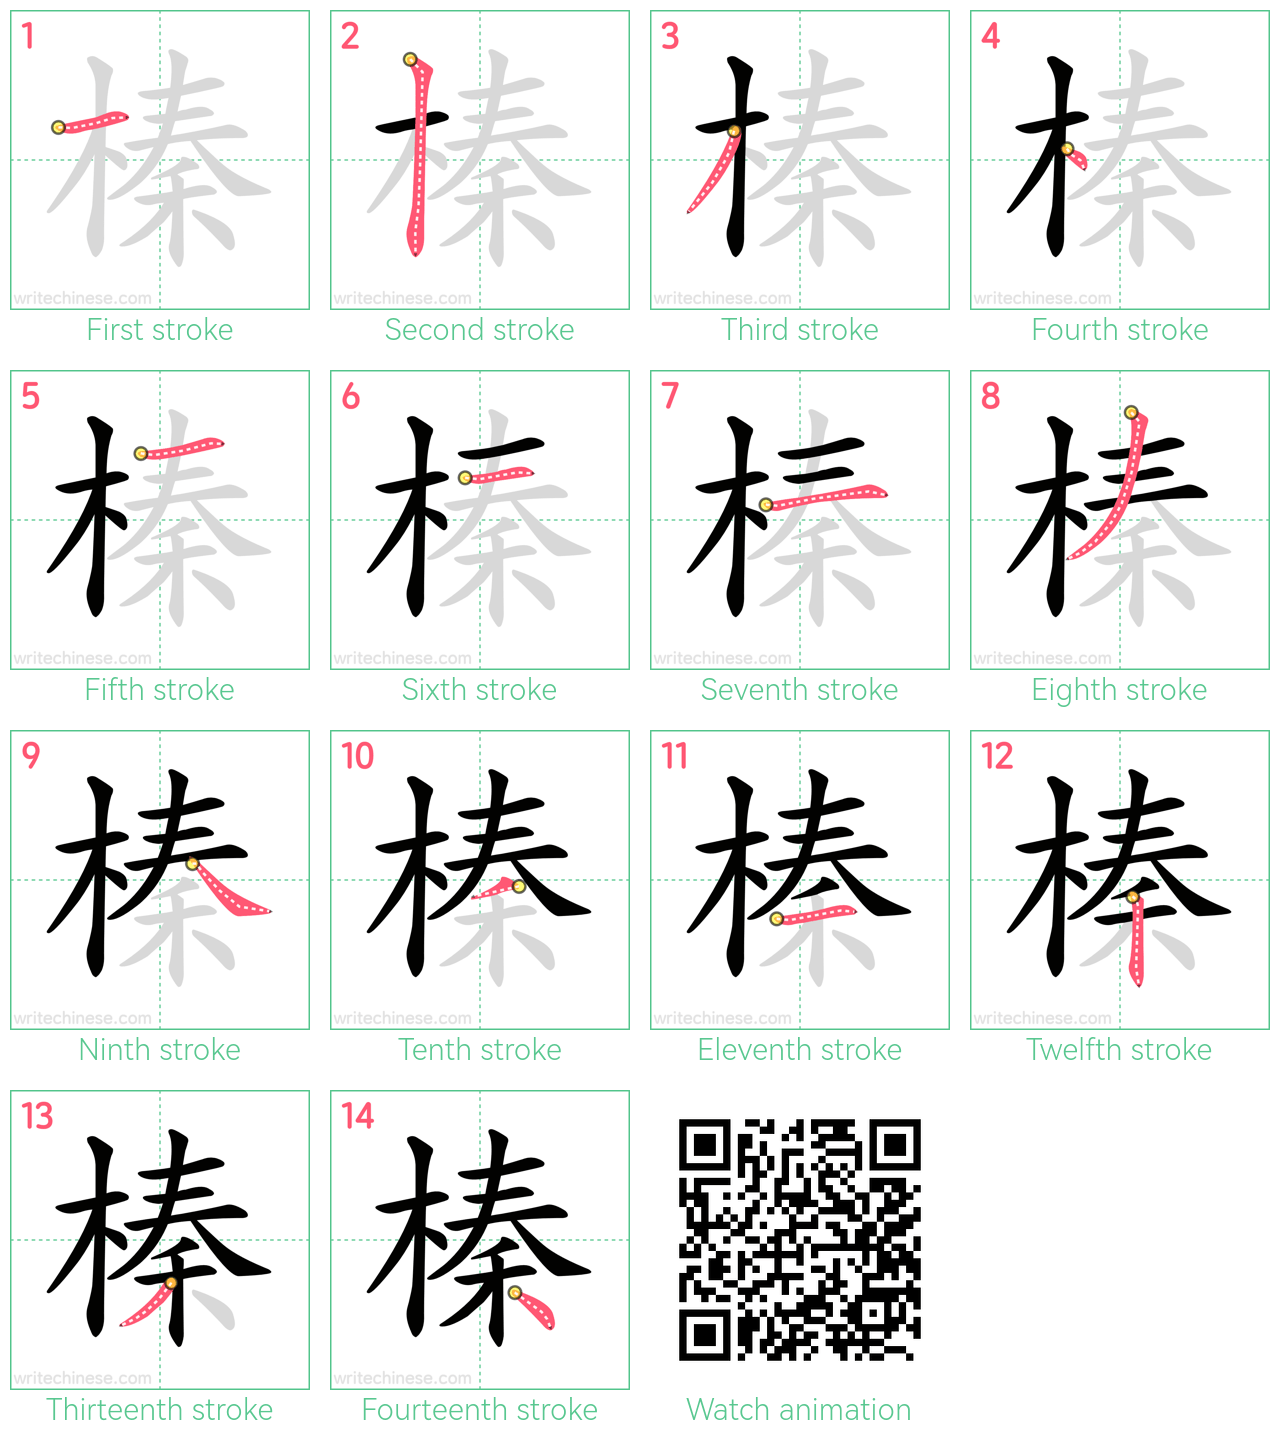 榛 step-by-step stroke order diagrams